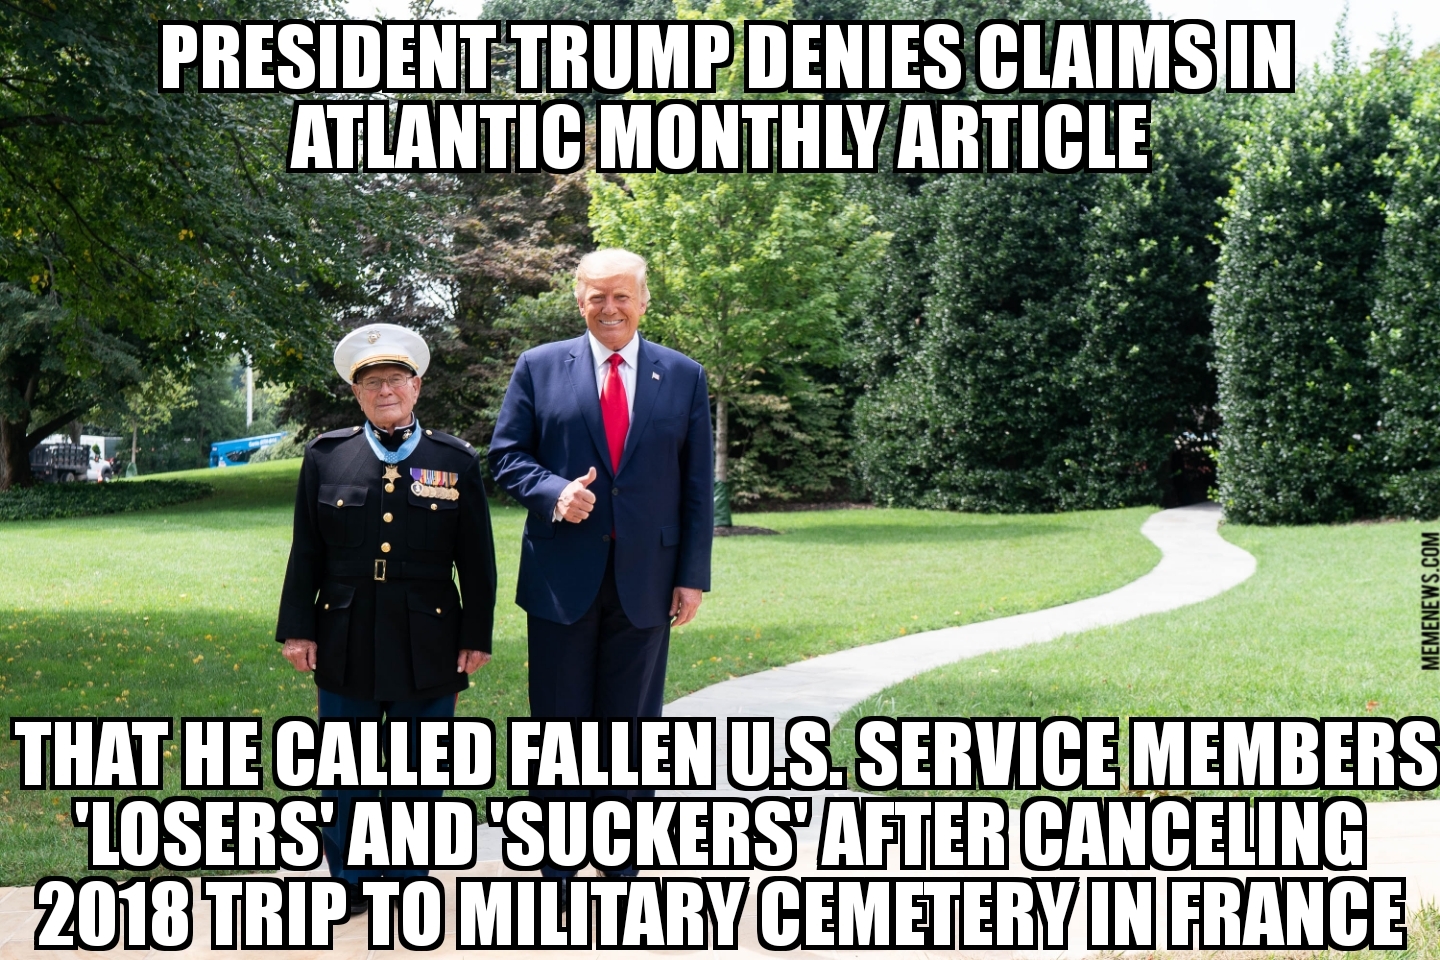 Trump denies he called fallen soldiers ‘losers’